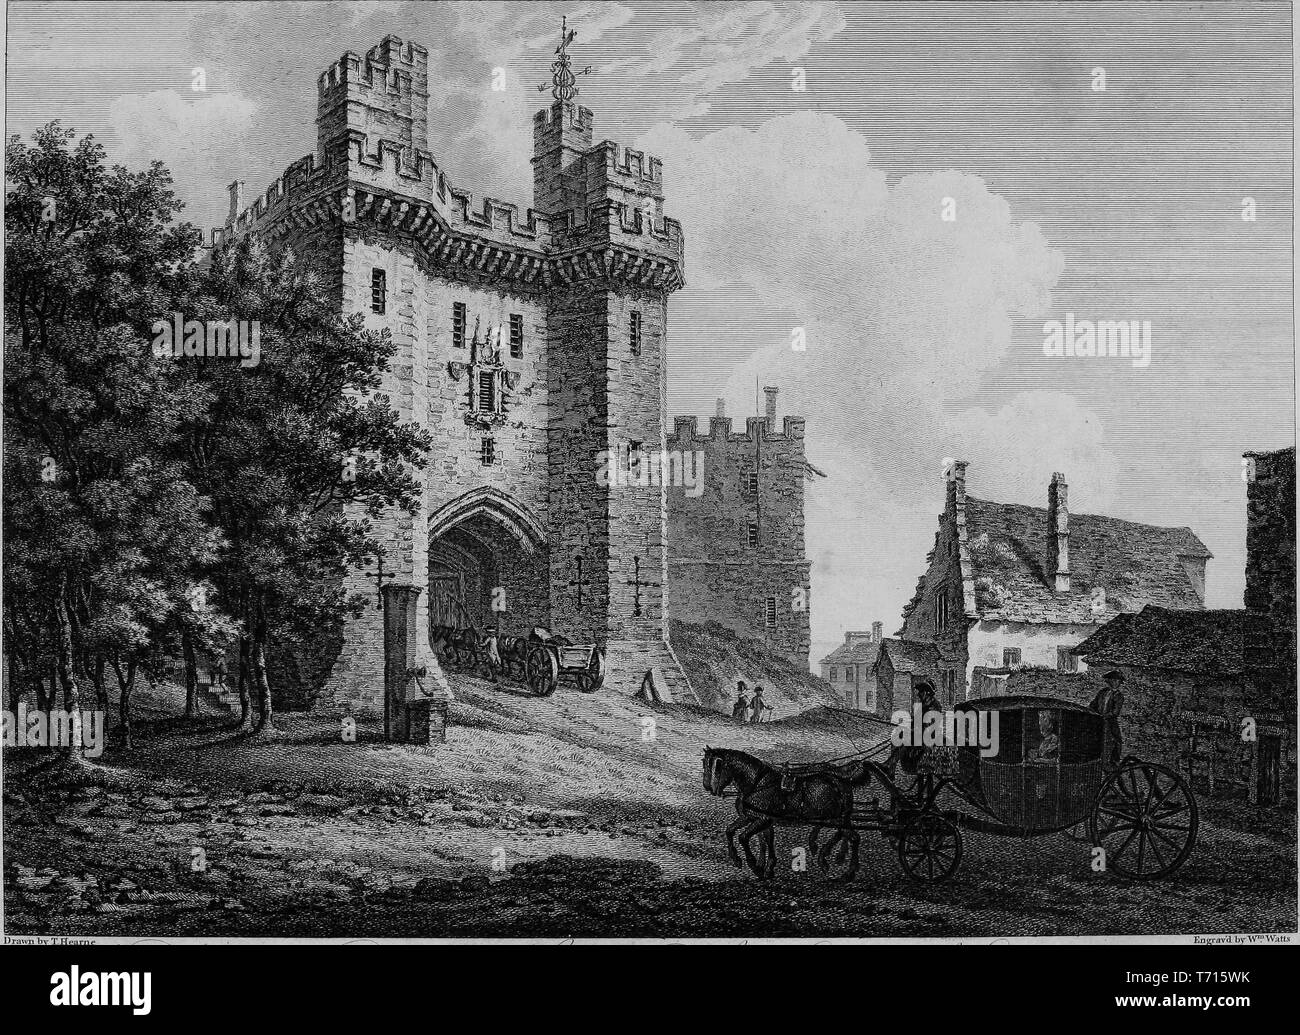 Incisione del Lancaster Castle in Lancashire, Inghilterra, dal libro "Antichità di Gran Bretagna' da William Byrne e Thomas Hearne, 1825. La cortesia Internet Archive. () Foto Stock